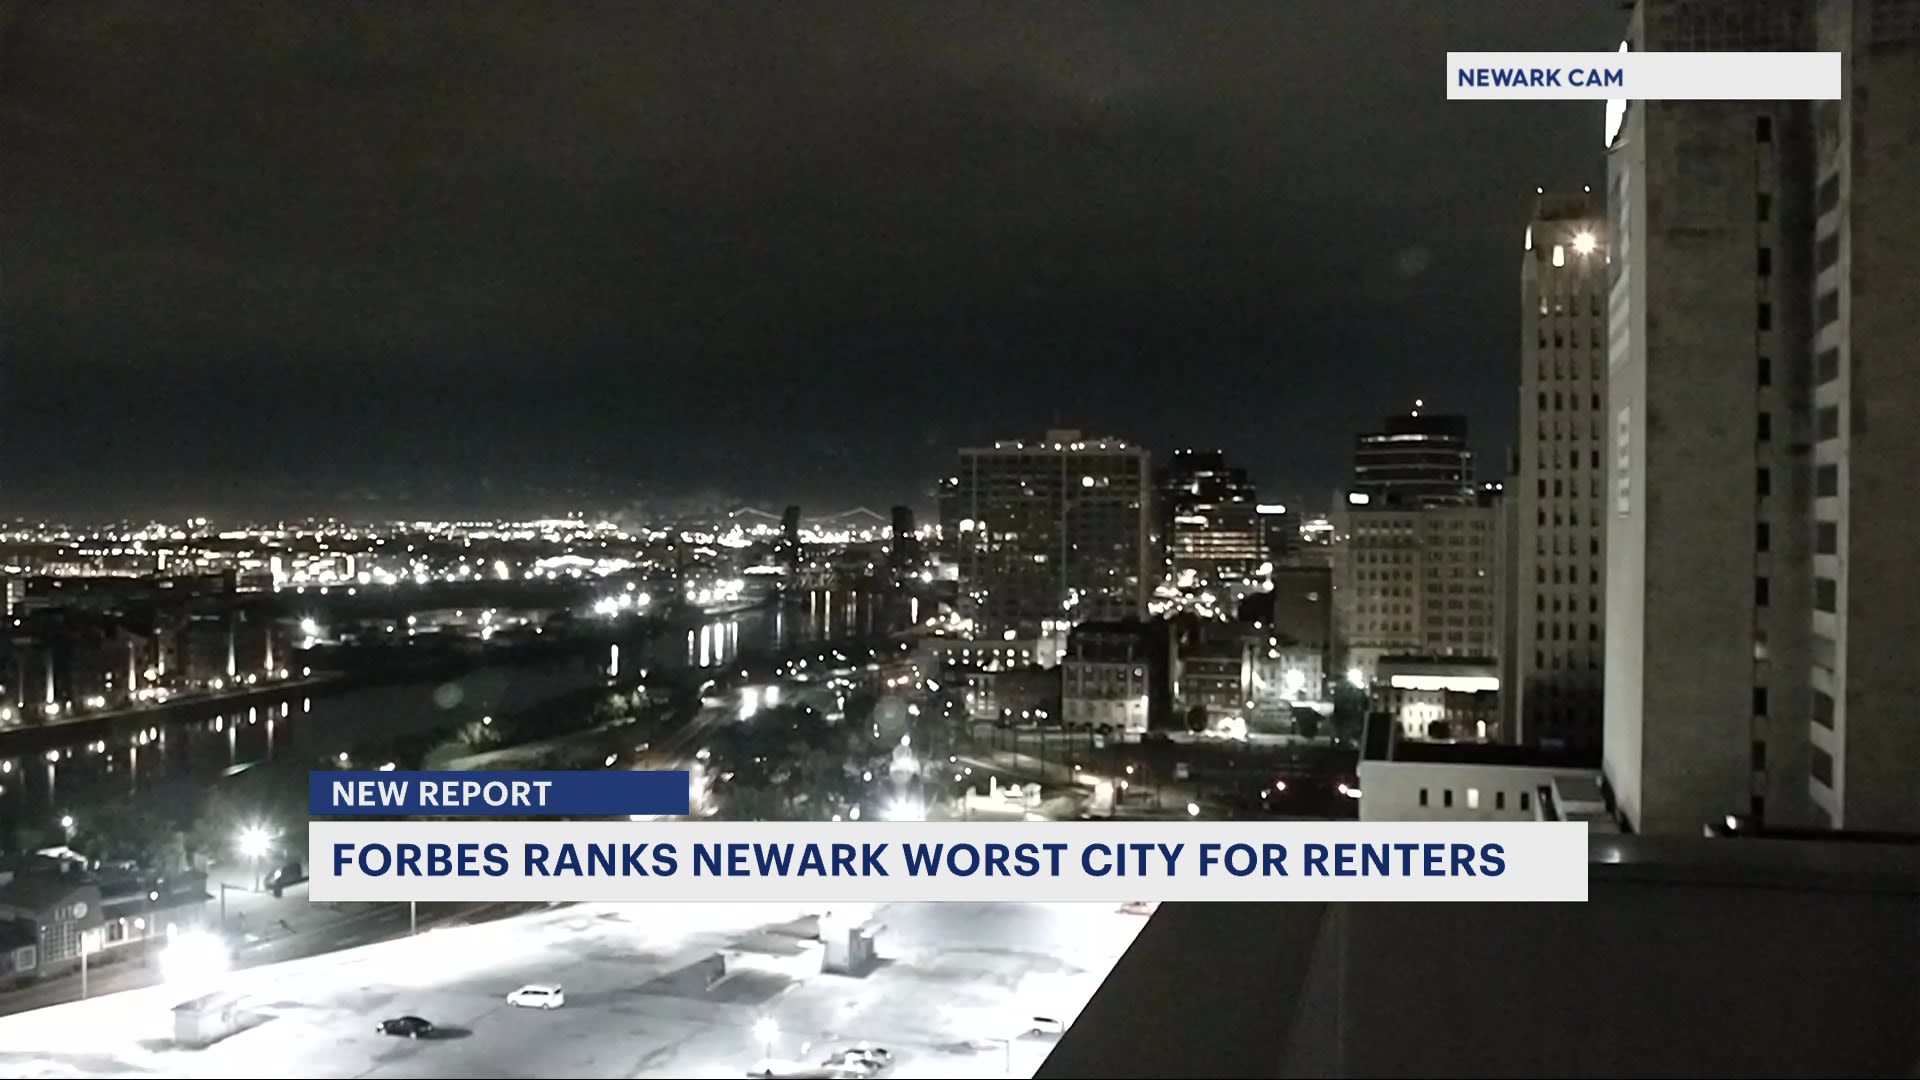 《福布斯》新报告称纽瓦克为租户最糟糕的城市